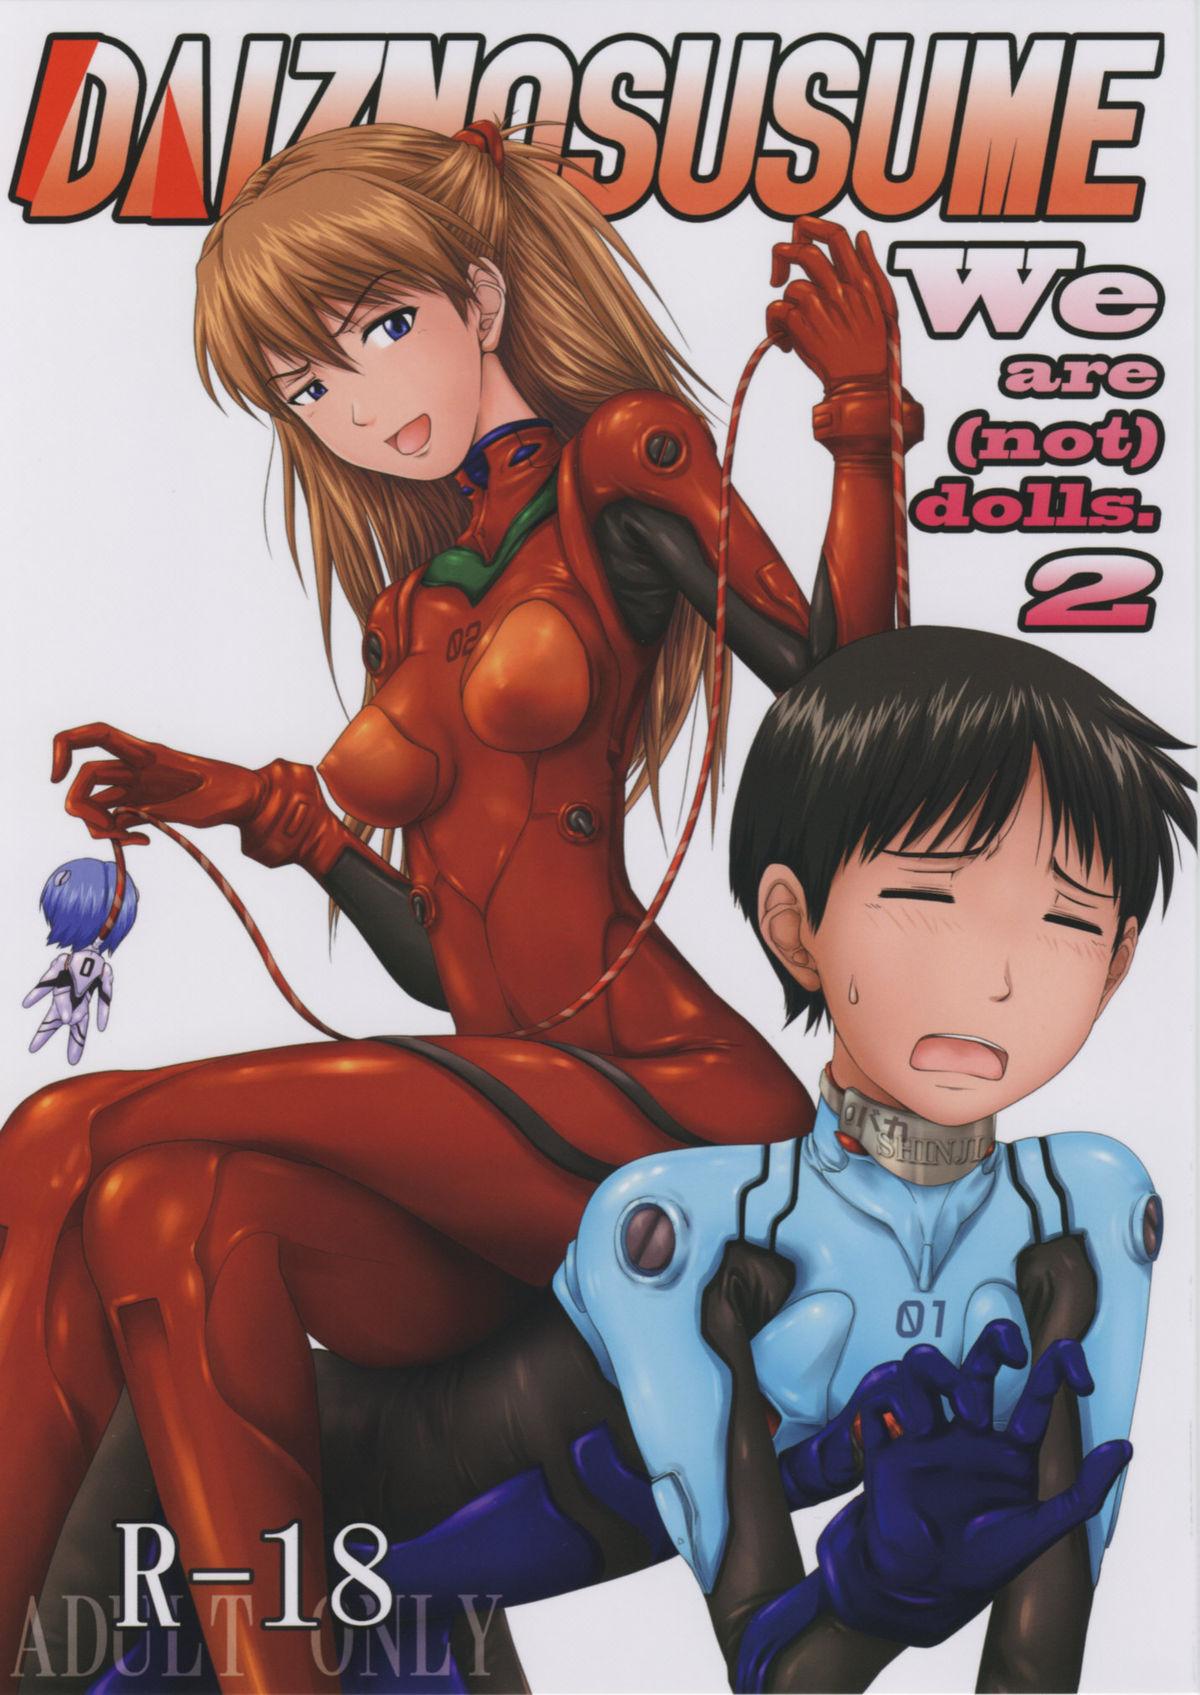 (C77) [Daiznosusume (Toyama Teiji, Saitou Kusuo)] We are (not) dolls. 2 (Rebuild of Evangelion) 0